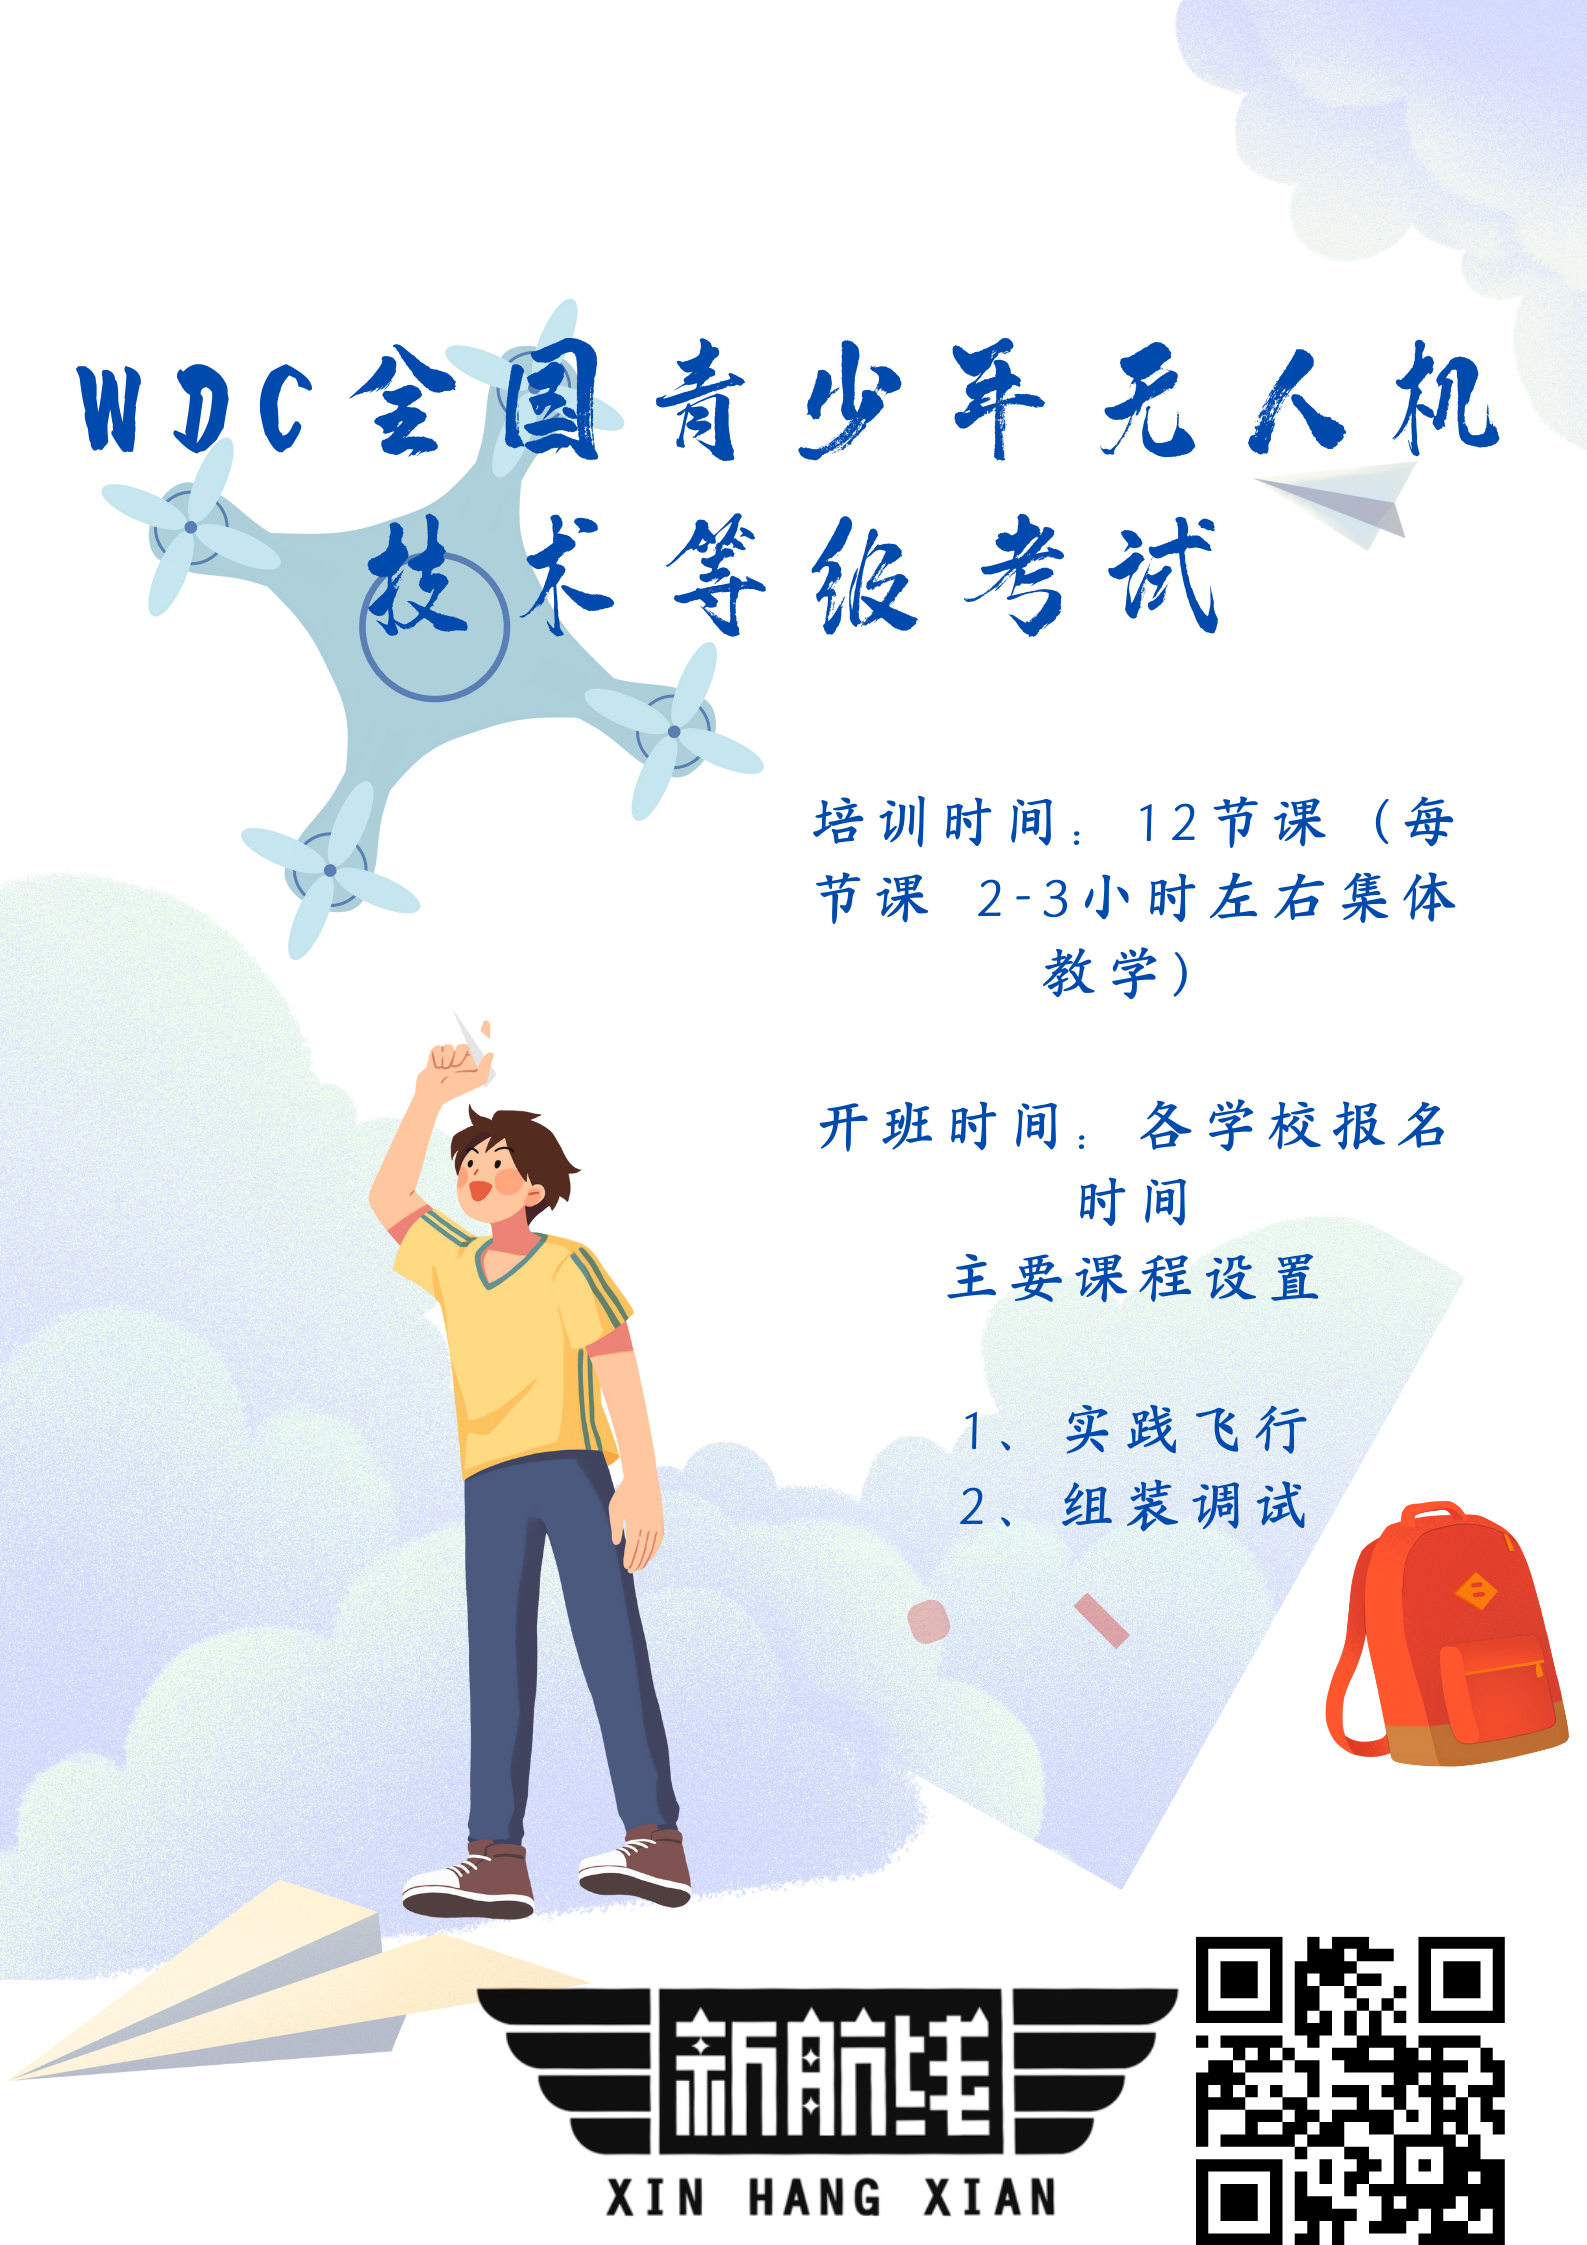 WDC全国青少年无人机技术等级考试.png